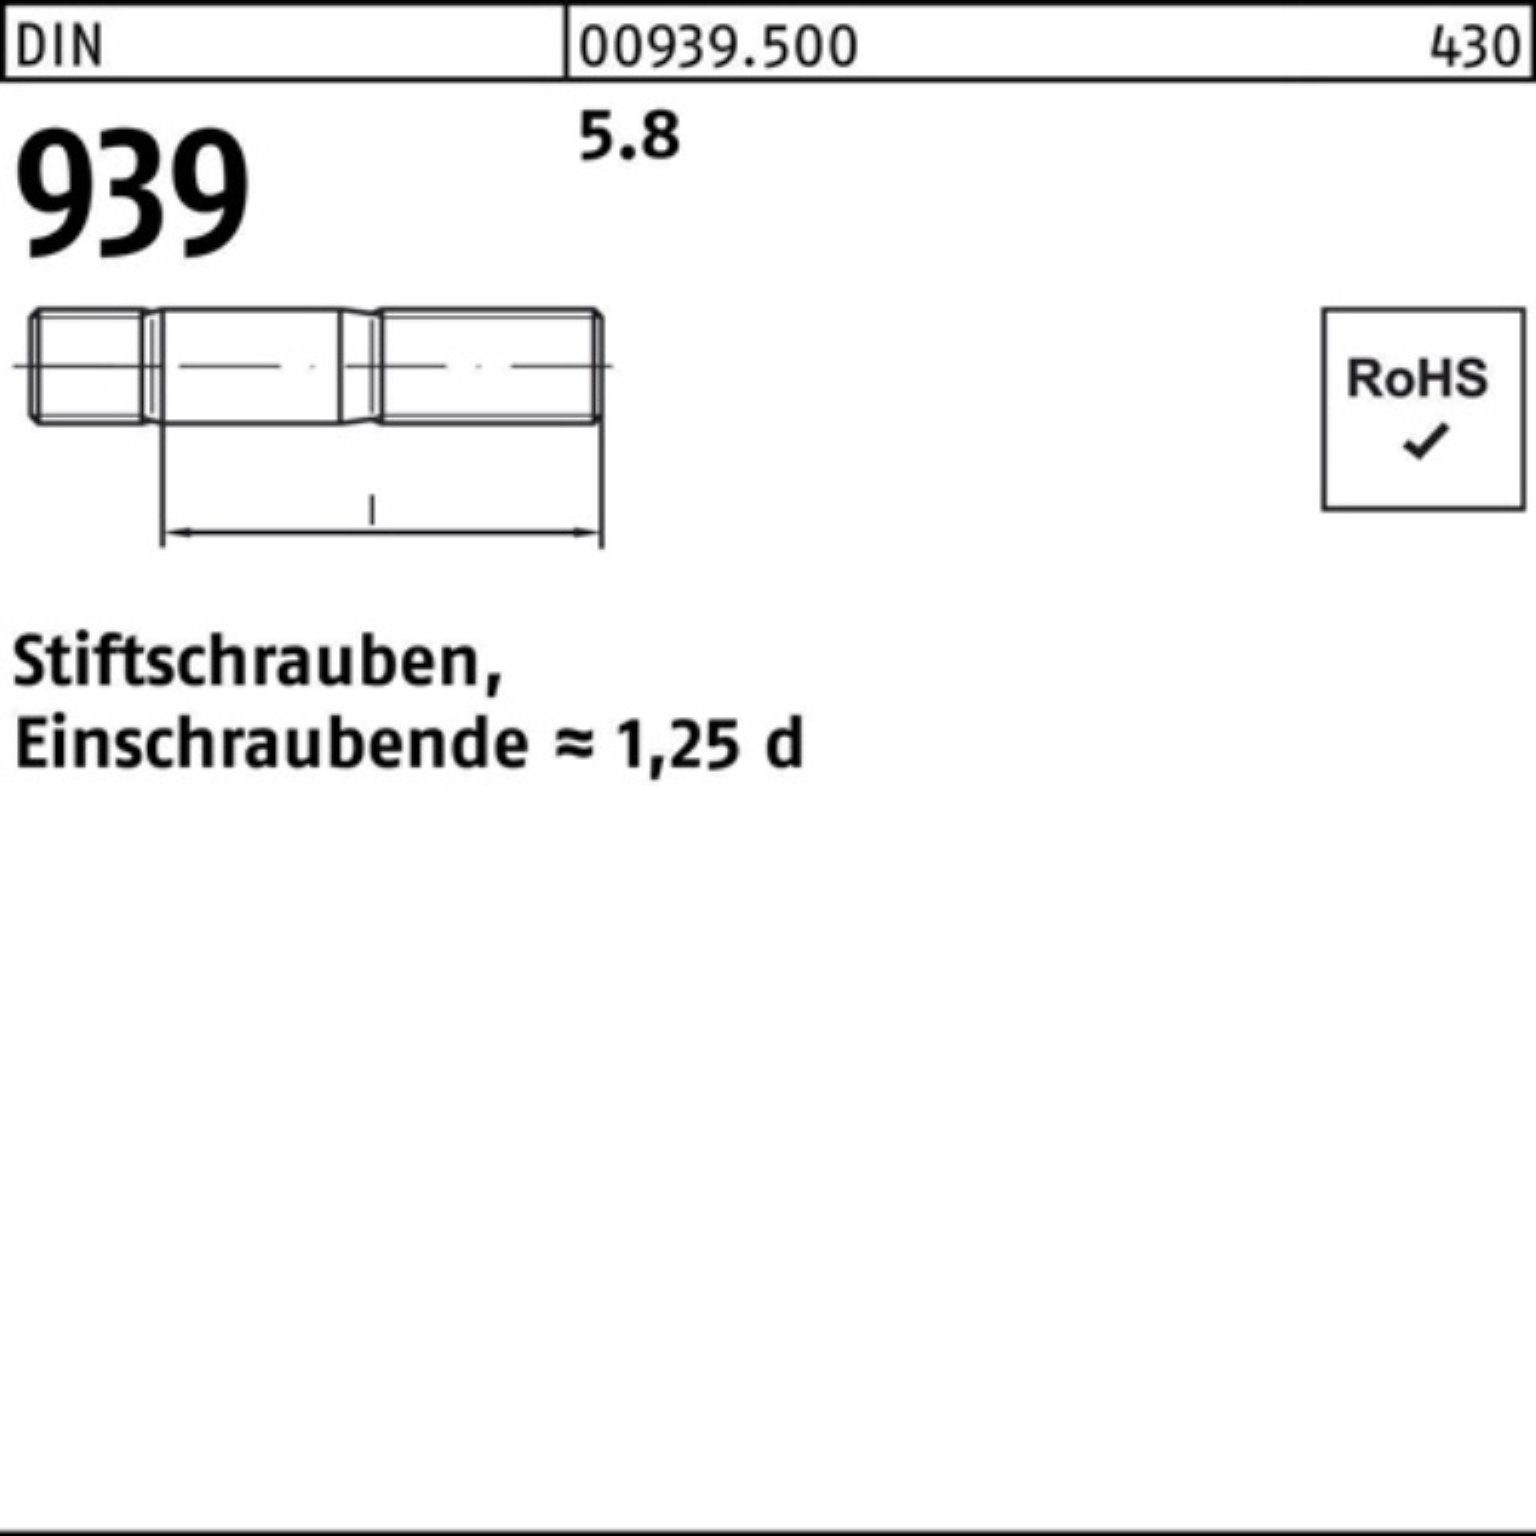 Reyher Stiftschraube 100er Pack Stiftschraube 5.8 939 DIN 50 S 25 M16x Einschraubende=1,25d